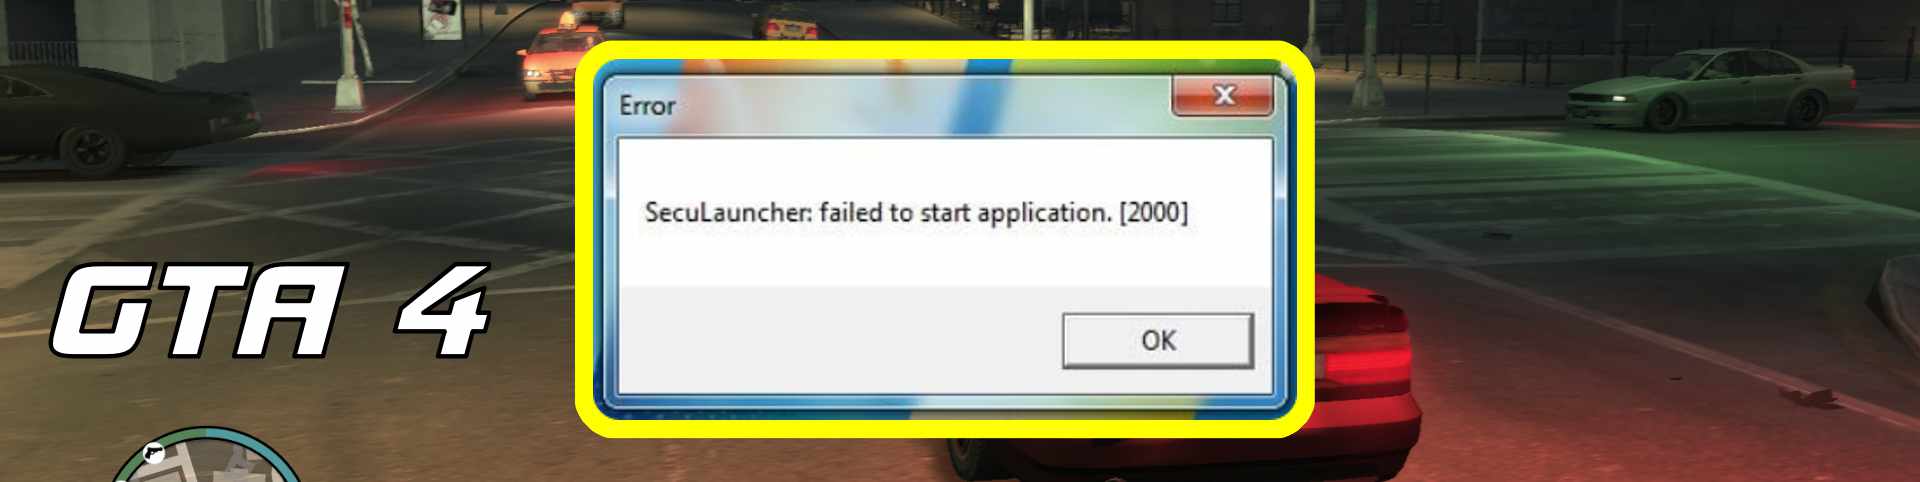 Seculauncher failed 2000